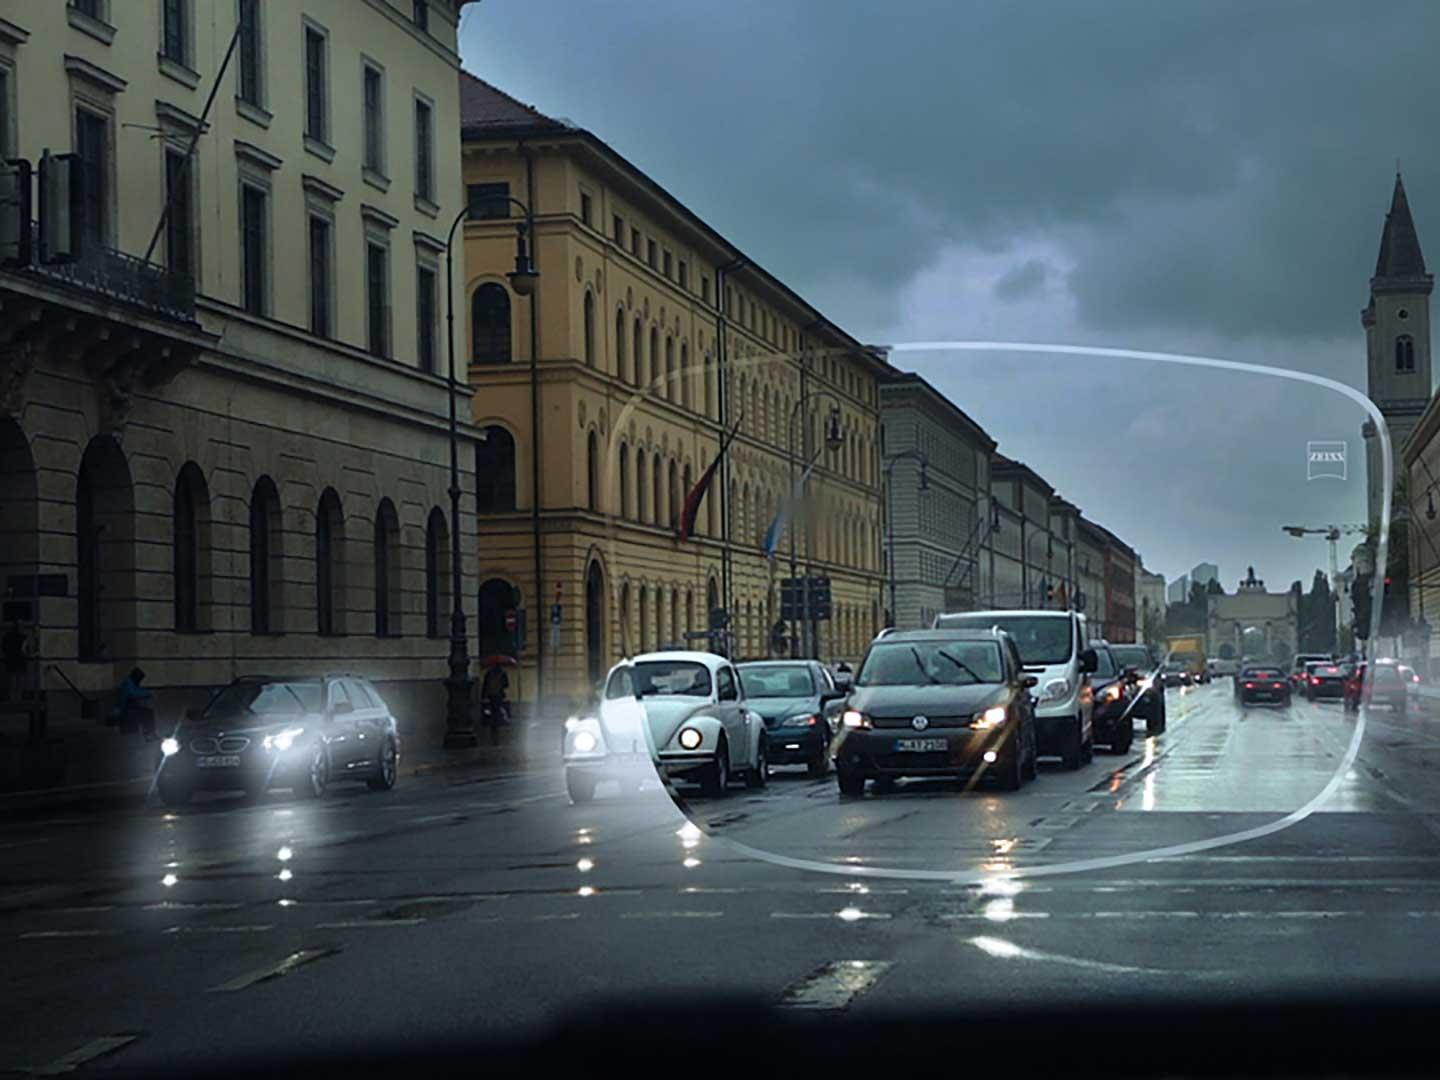 Görüntü, bir caddede düşük ışık koşullarında zayıf görüşü gösterir. Bakış açısı, bir gözlük camından görülen bir arabanın içidir. 